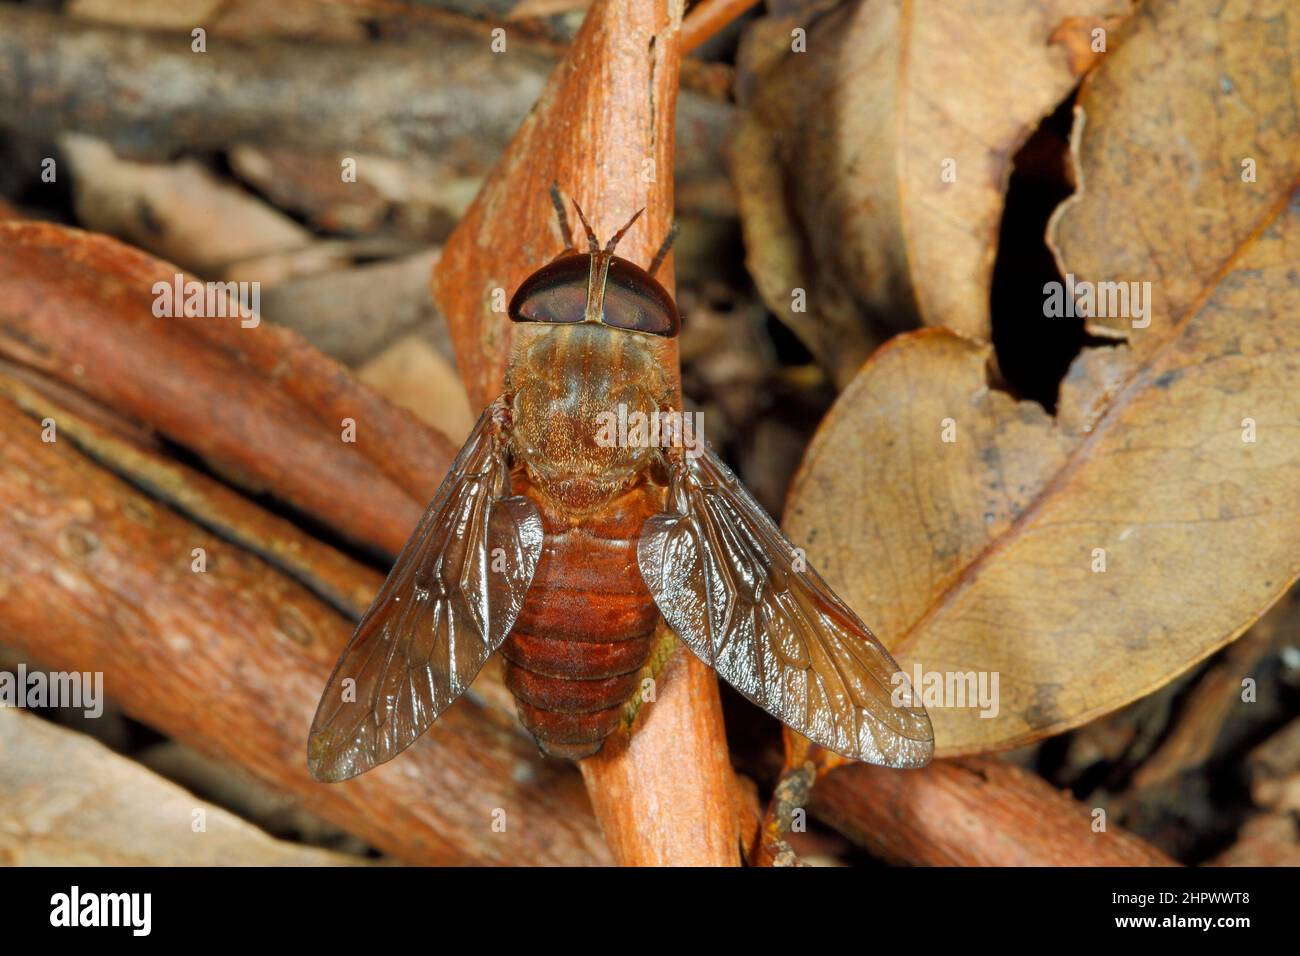 Marchar de color marrón rojizo, Cydistomyia fergusoni. También conocido como una mosca del caballo. Se alimentan de la sangre de sus víctimas, que incluye a los humanos. Foto de stock